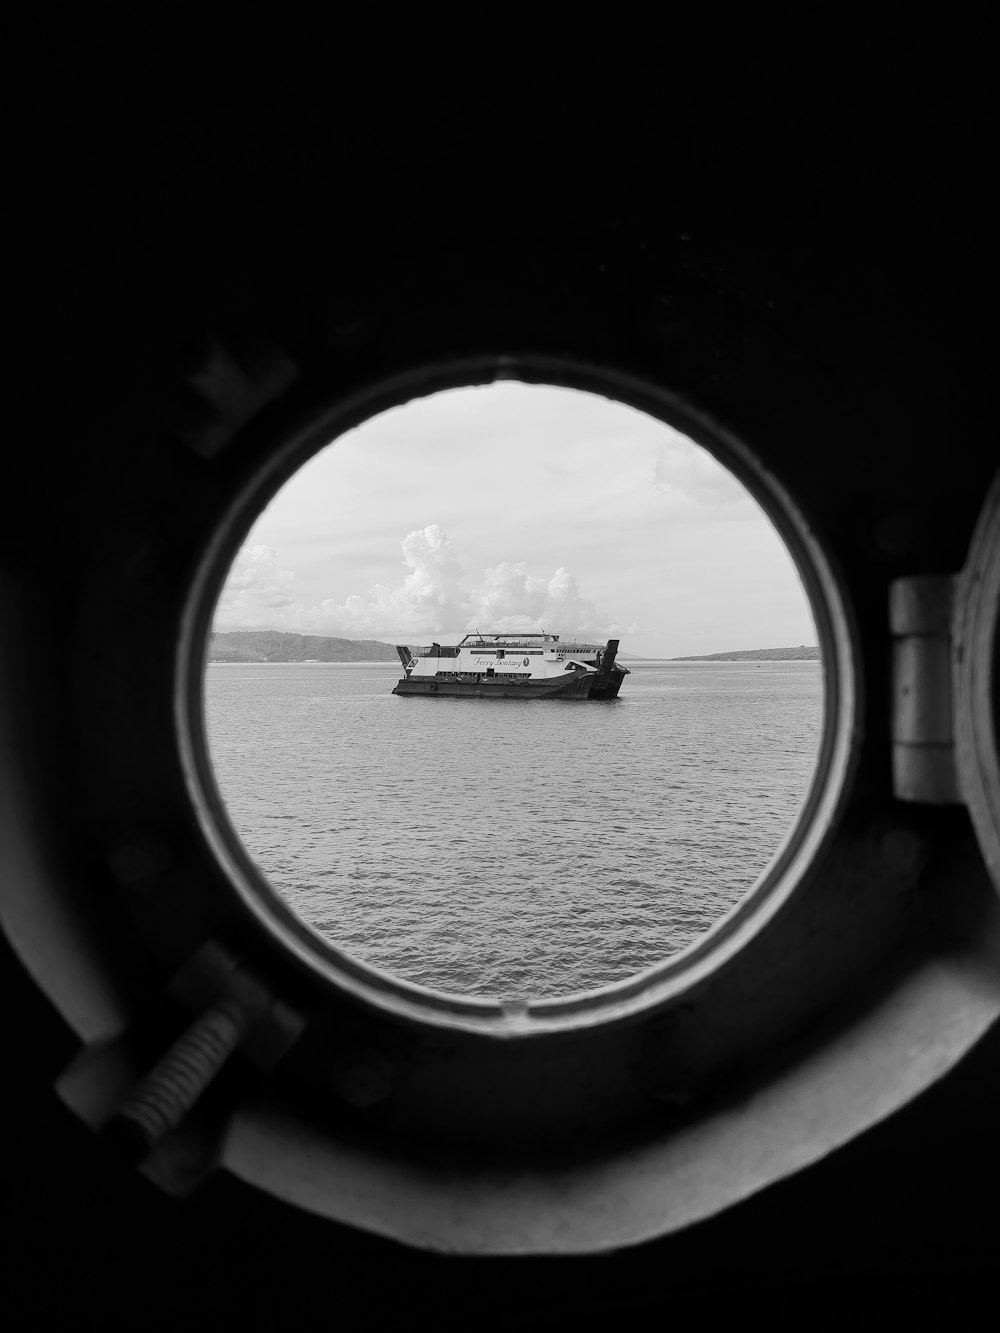 a view of a boat out a window of a ship on the water